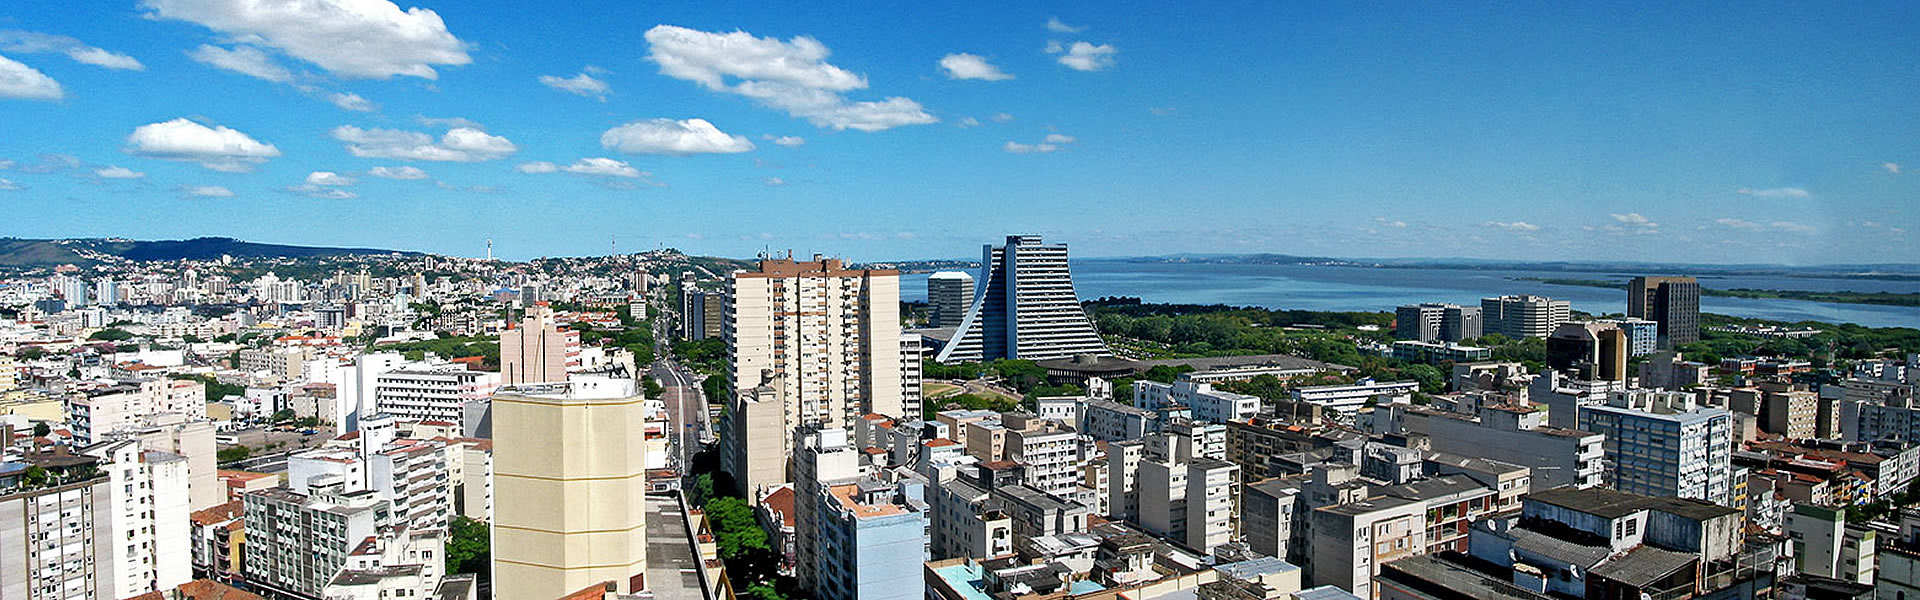 Locação e vendas de imóveis em Porto Alegre